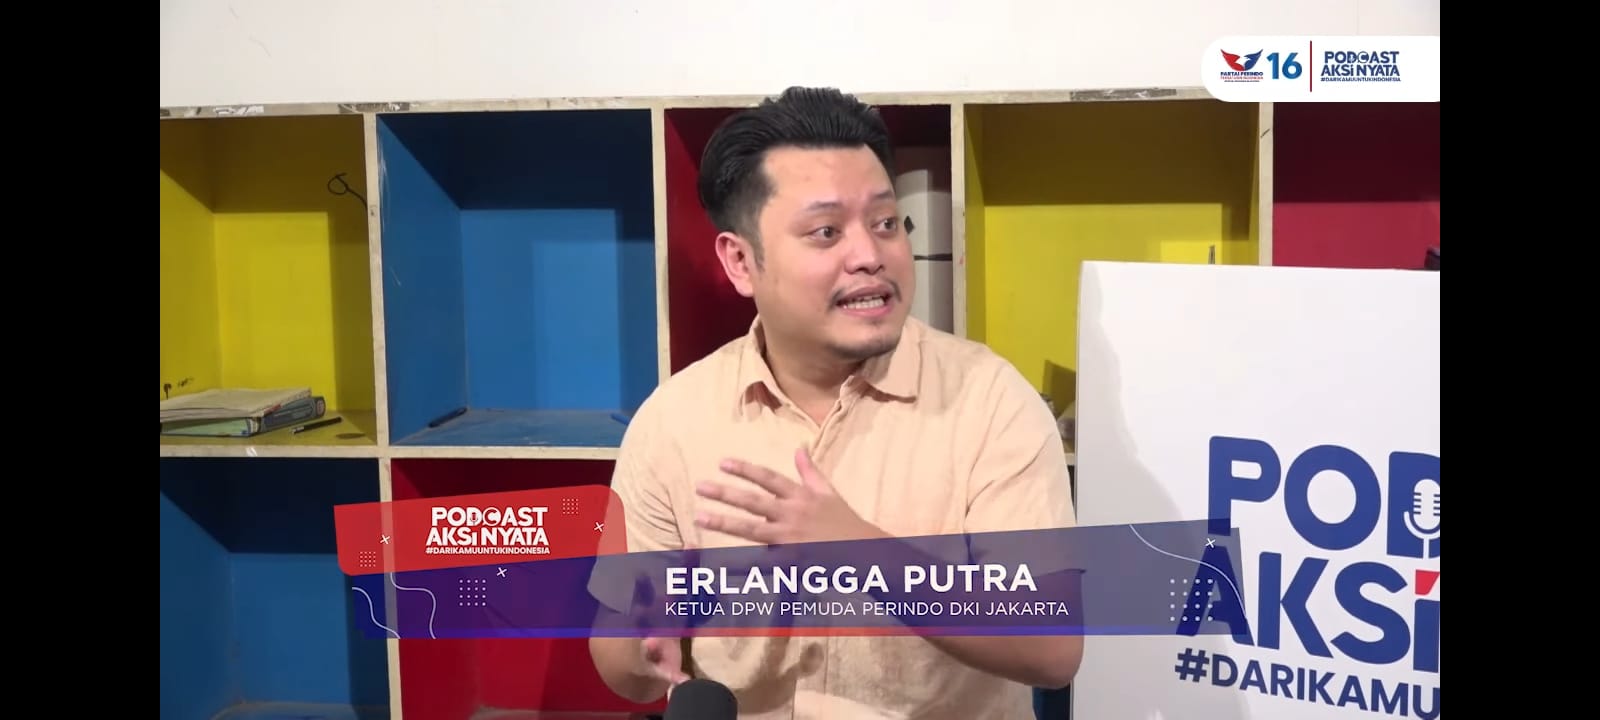 Podcast Aksi Nyata Perindo, Ketua DPW Pemuda DKI Jakarta Paparkan Kegiatan Mereka